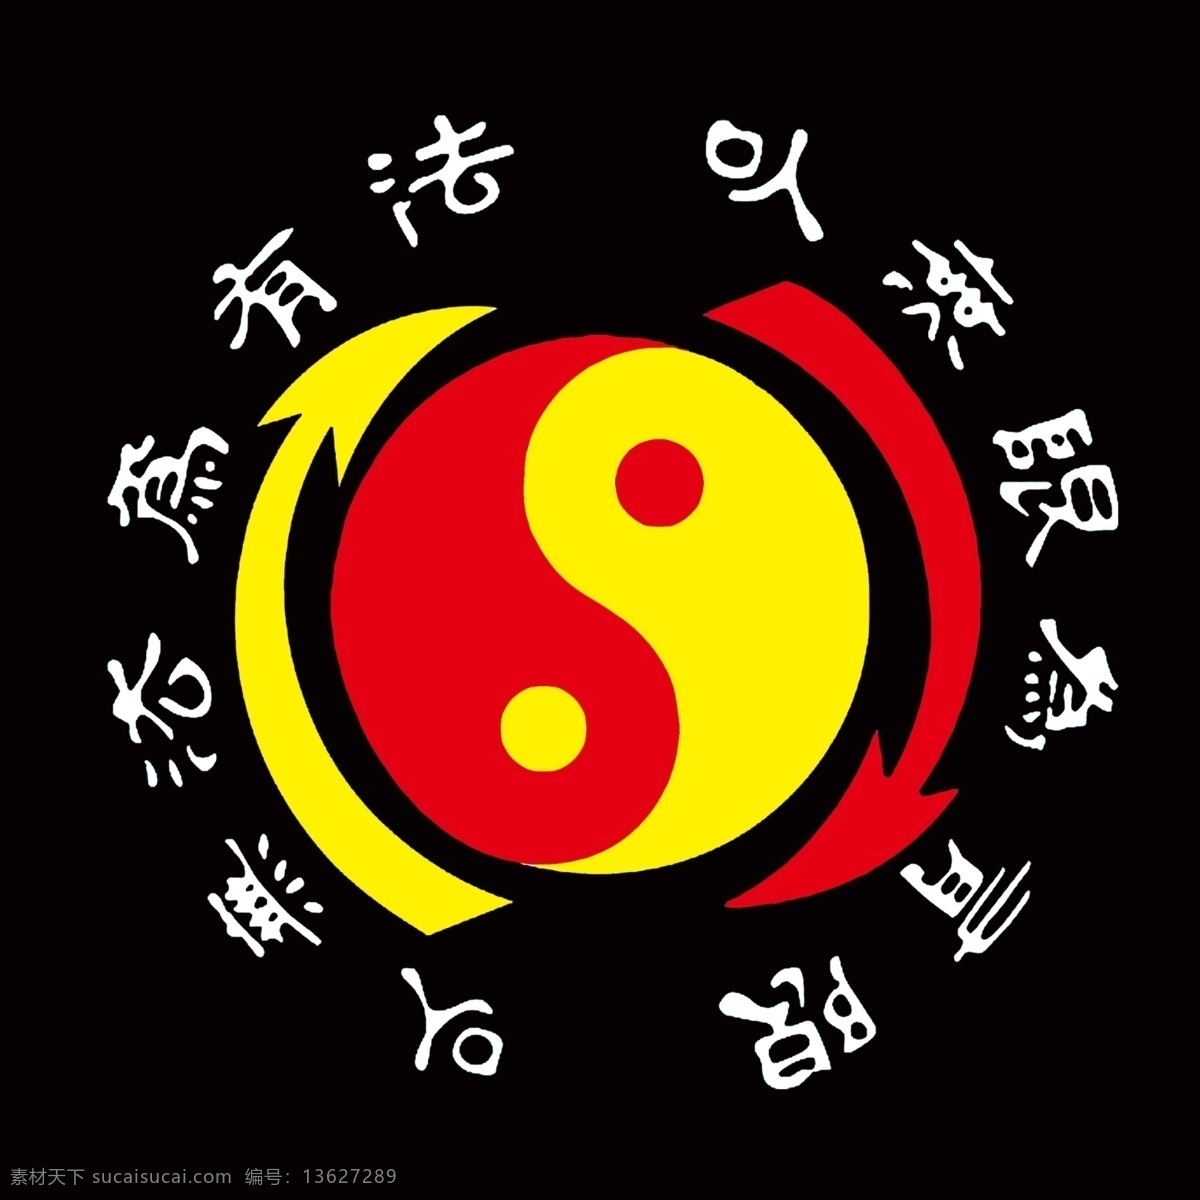 截拳道 logo 李小龙 武术 太极图 宣传单 分层